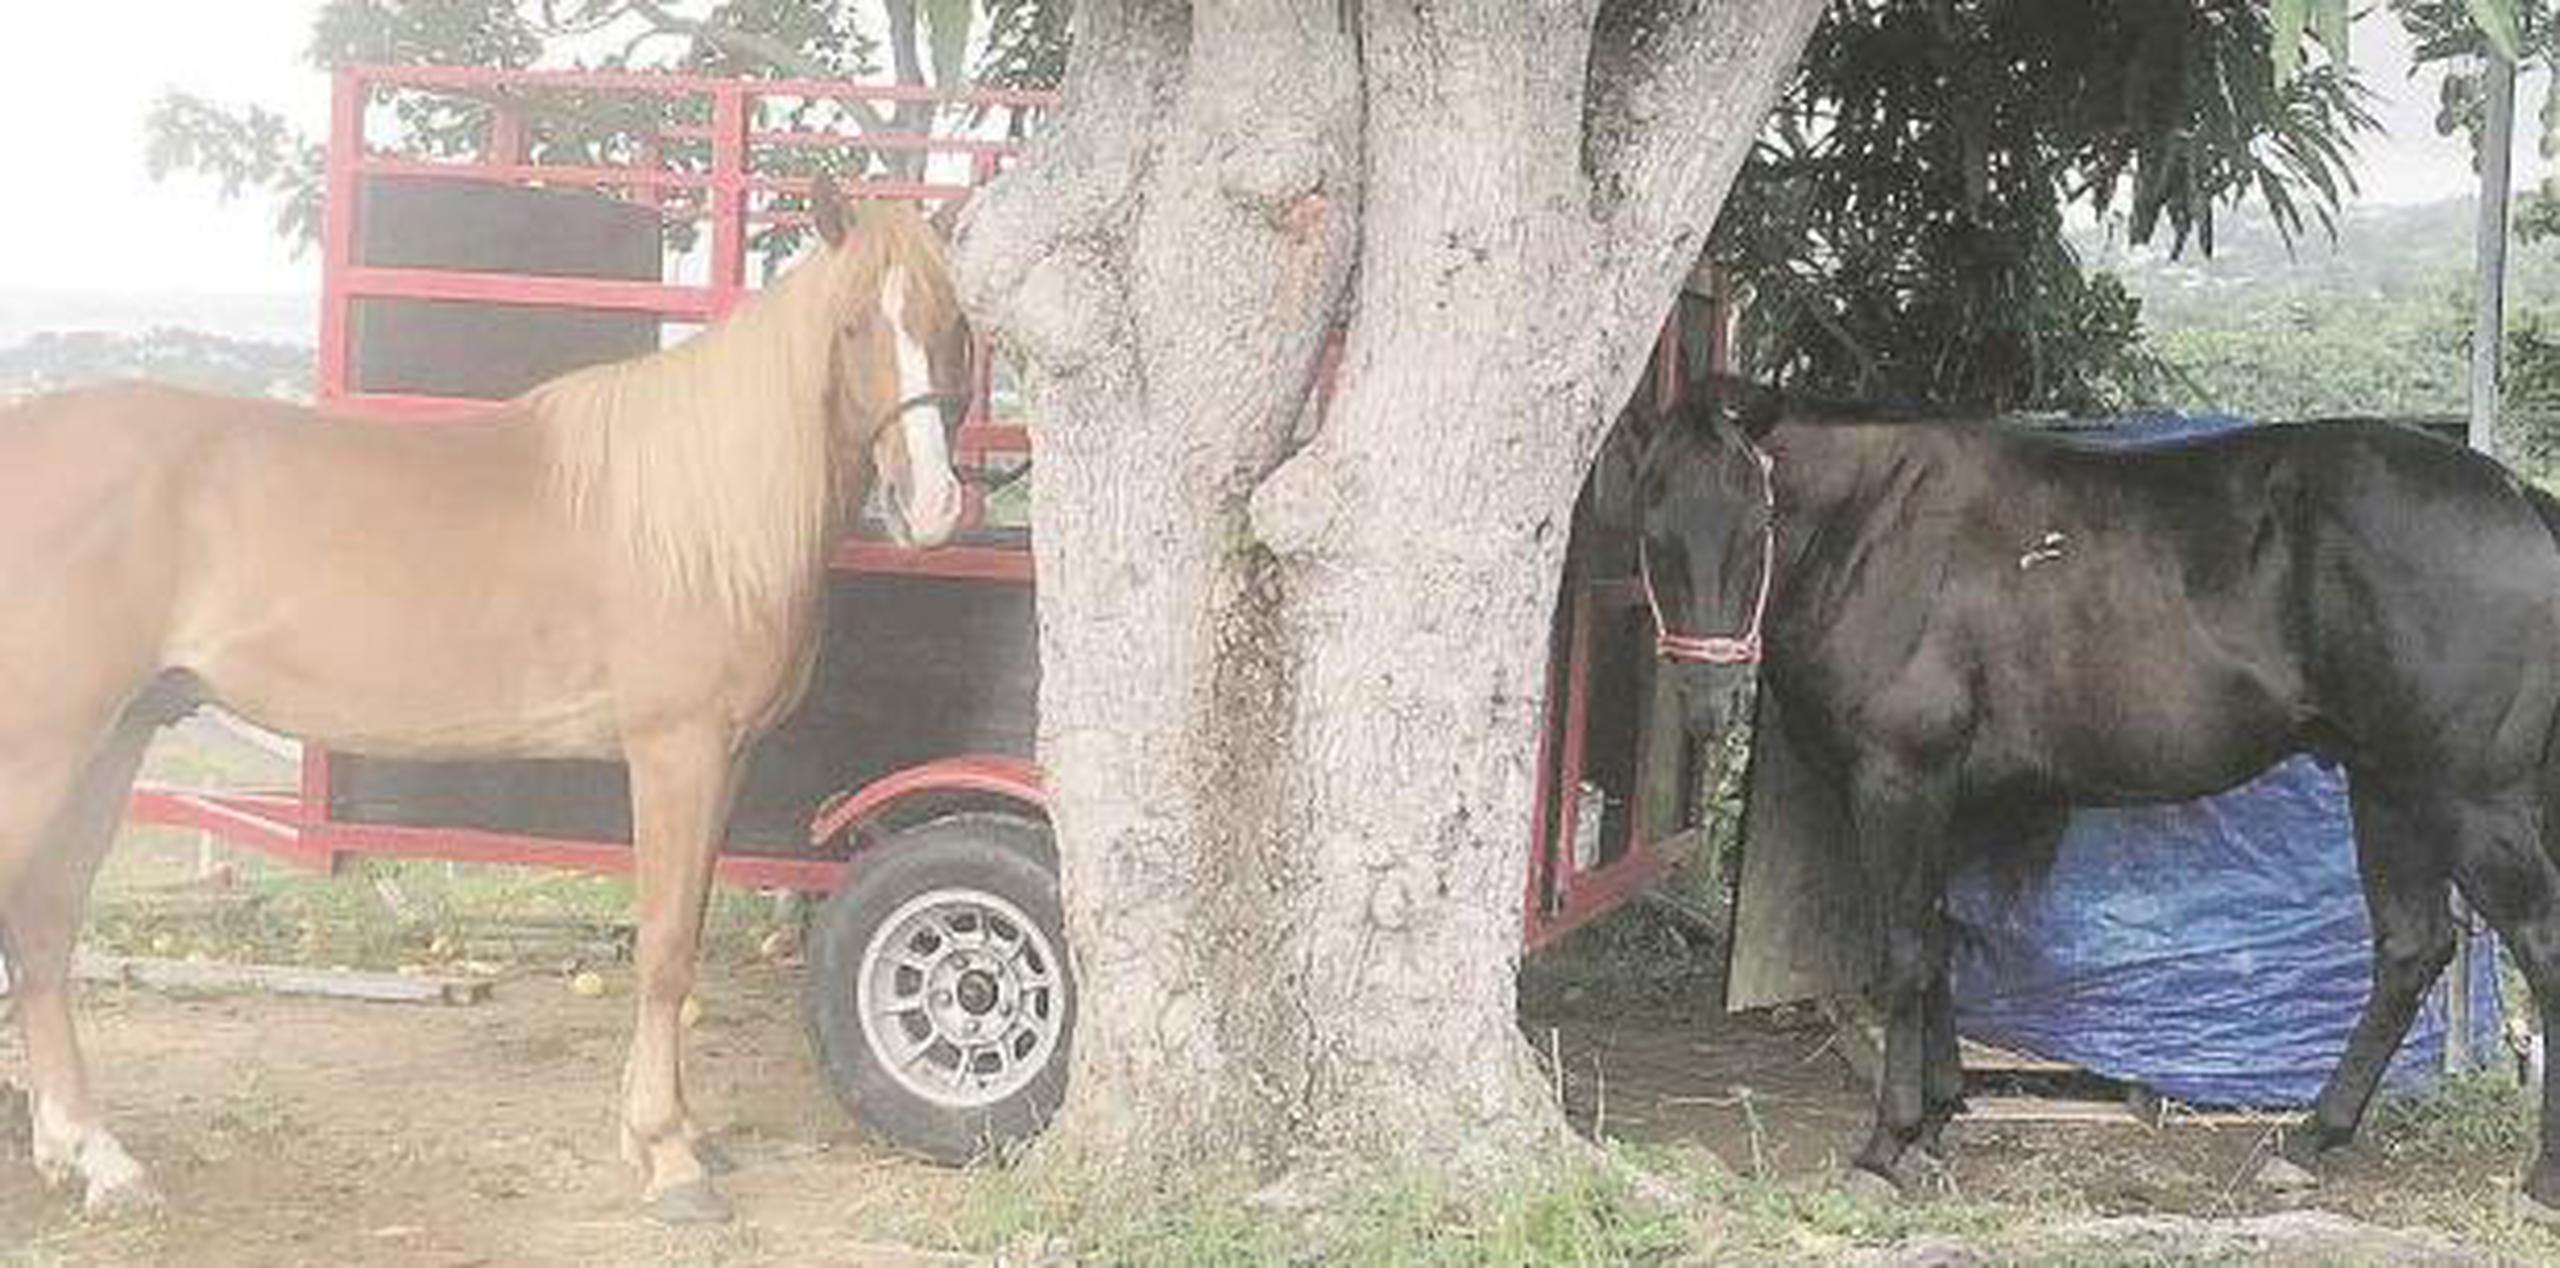 Varios residentes que no quisieron identificarse por temor a represalias, aseguraron que la práctica de carreras de caballos clandestinas es un problema que lleva muchos años y se llevan a cabo en más de un sitio. (Suministrada)